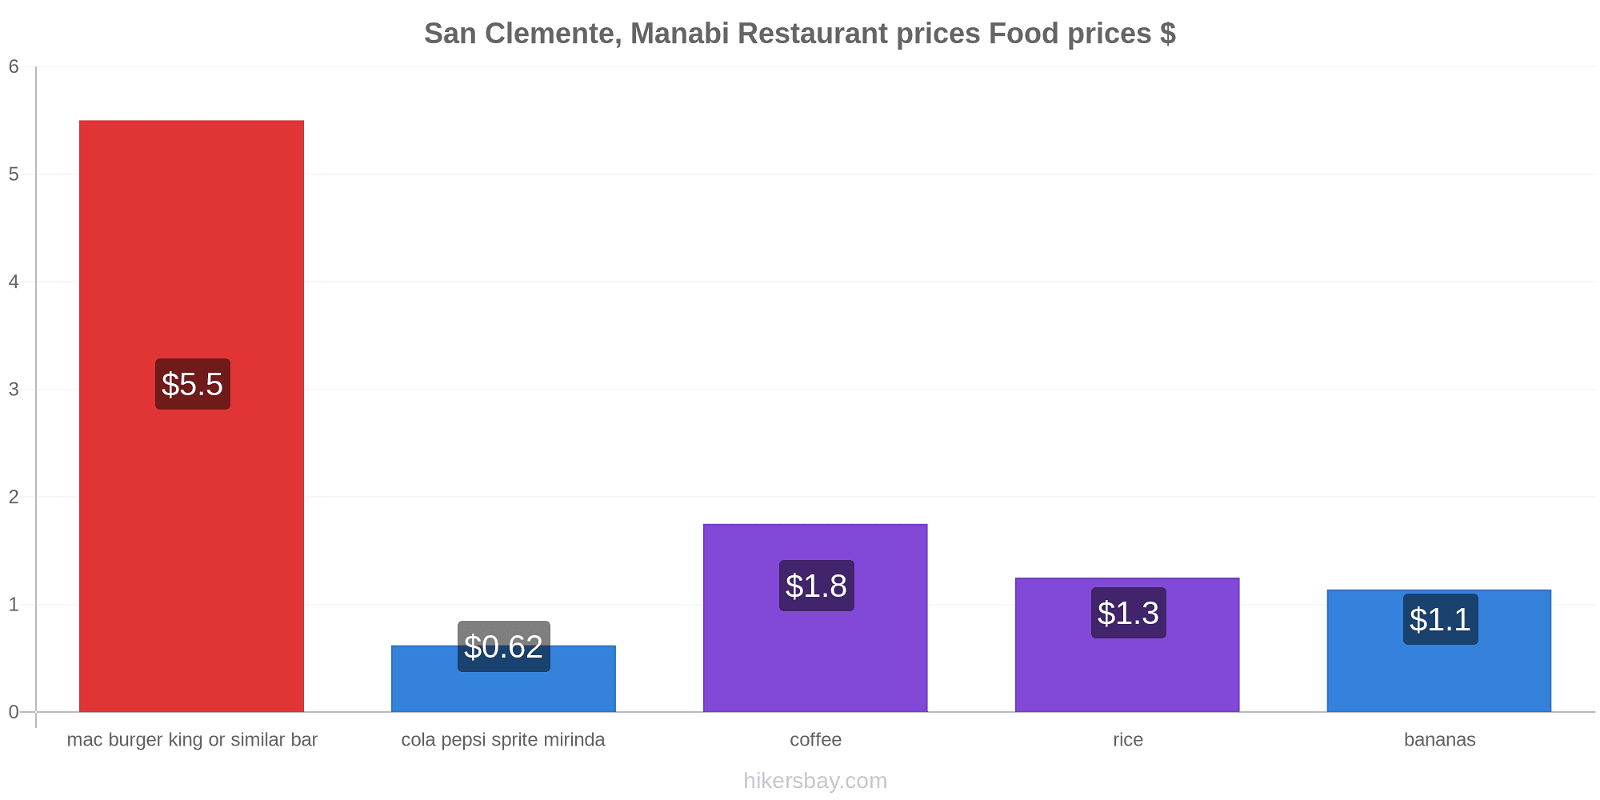 San Clemente, Manabi price changes hikersbay.com